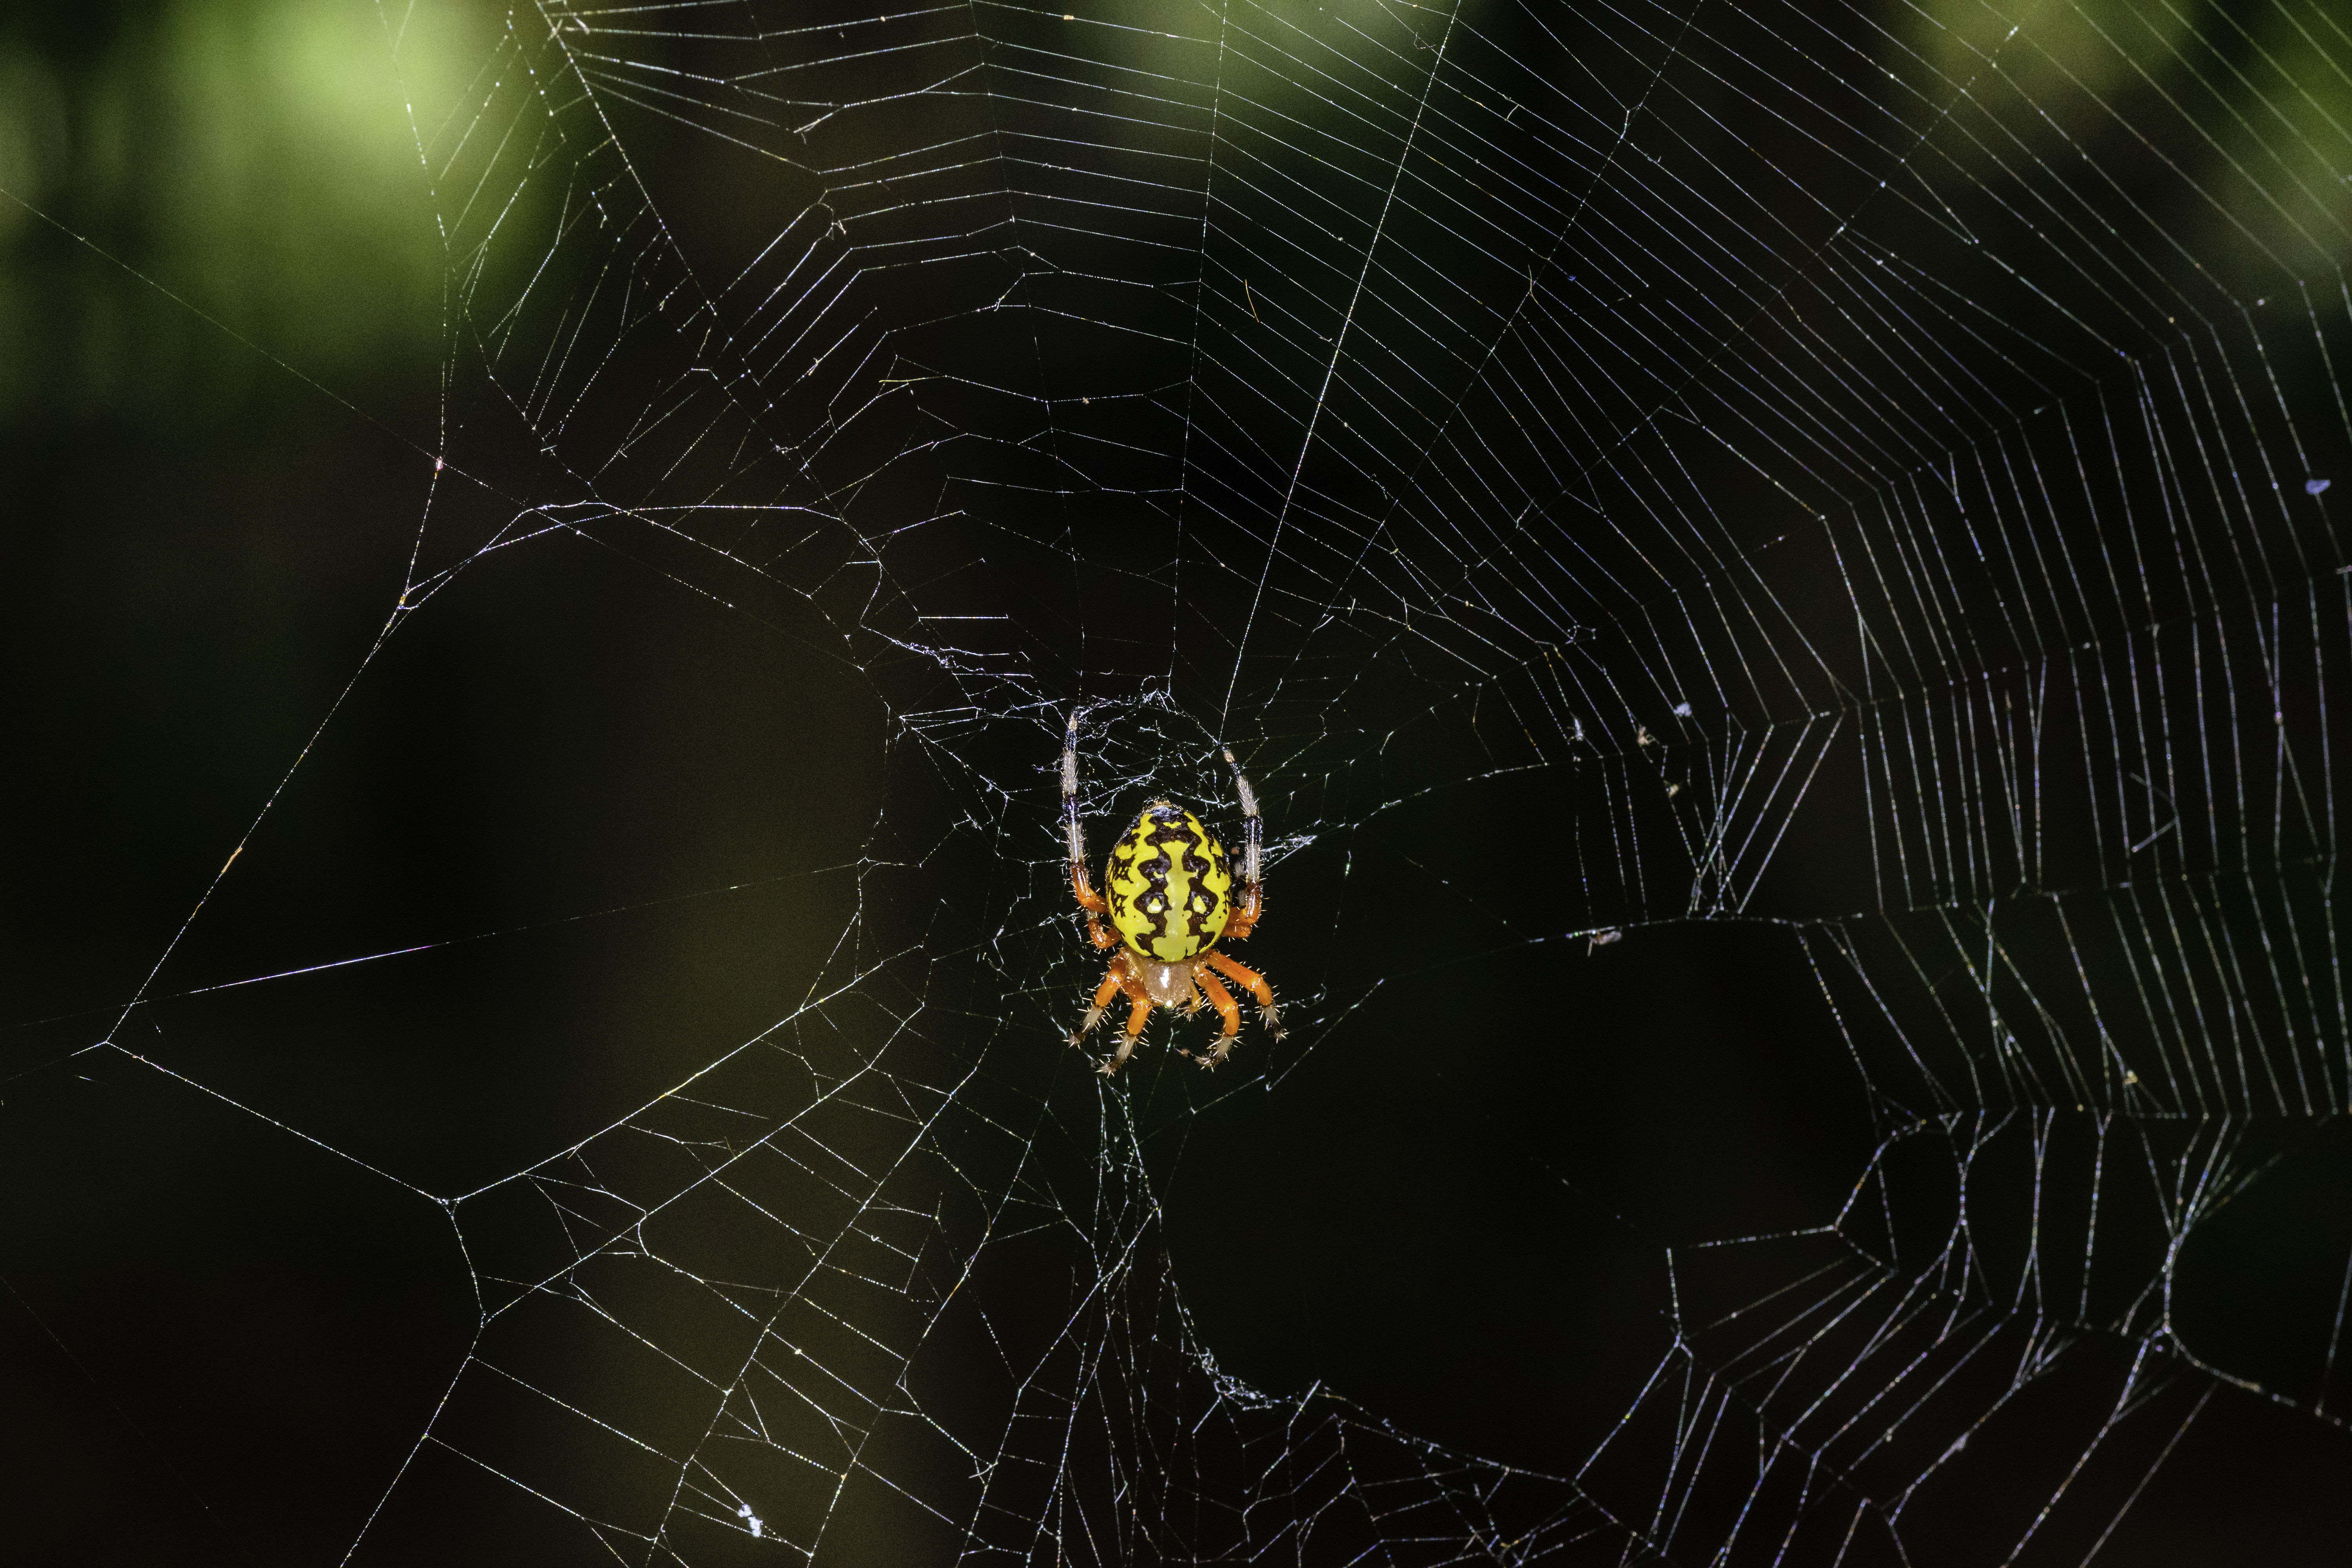 Orb Weaver spider 2 LR.jpg. 